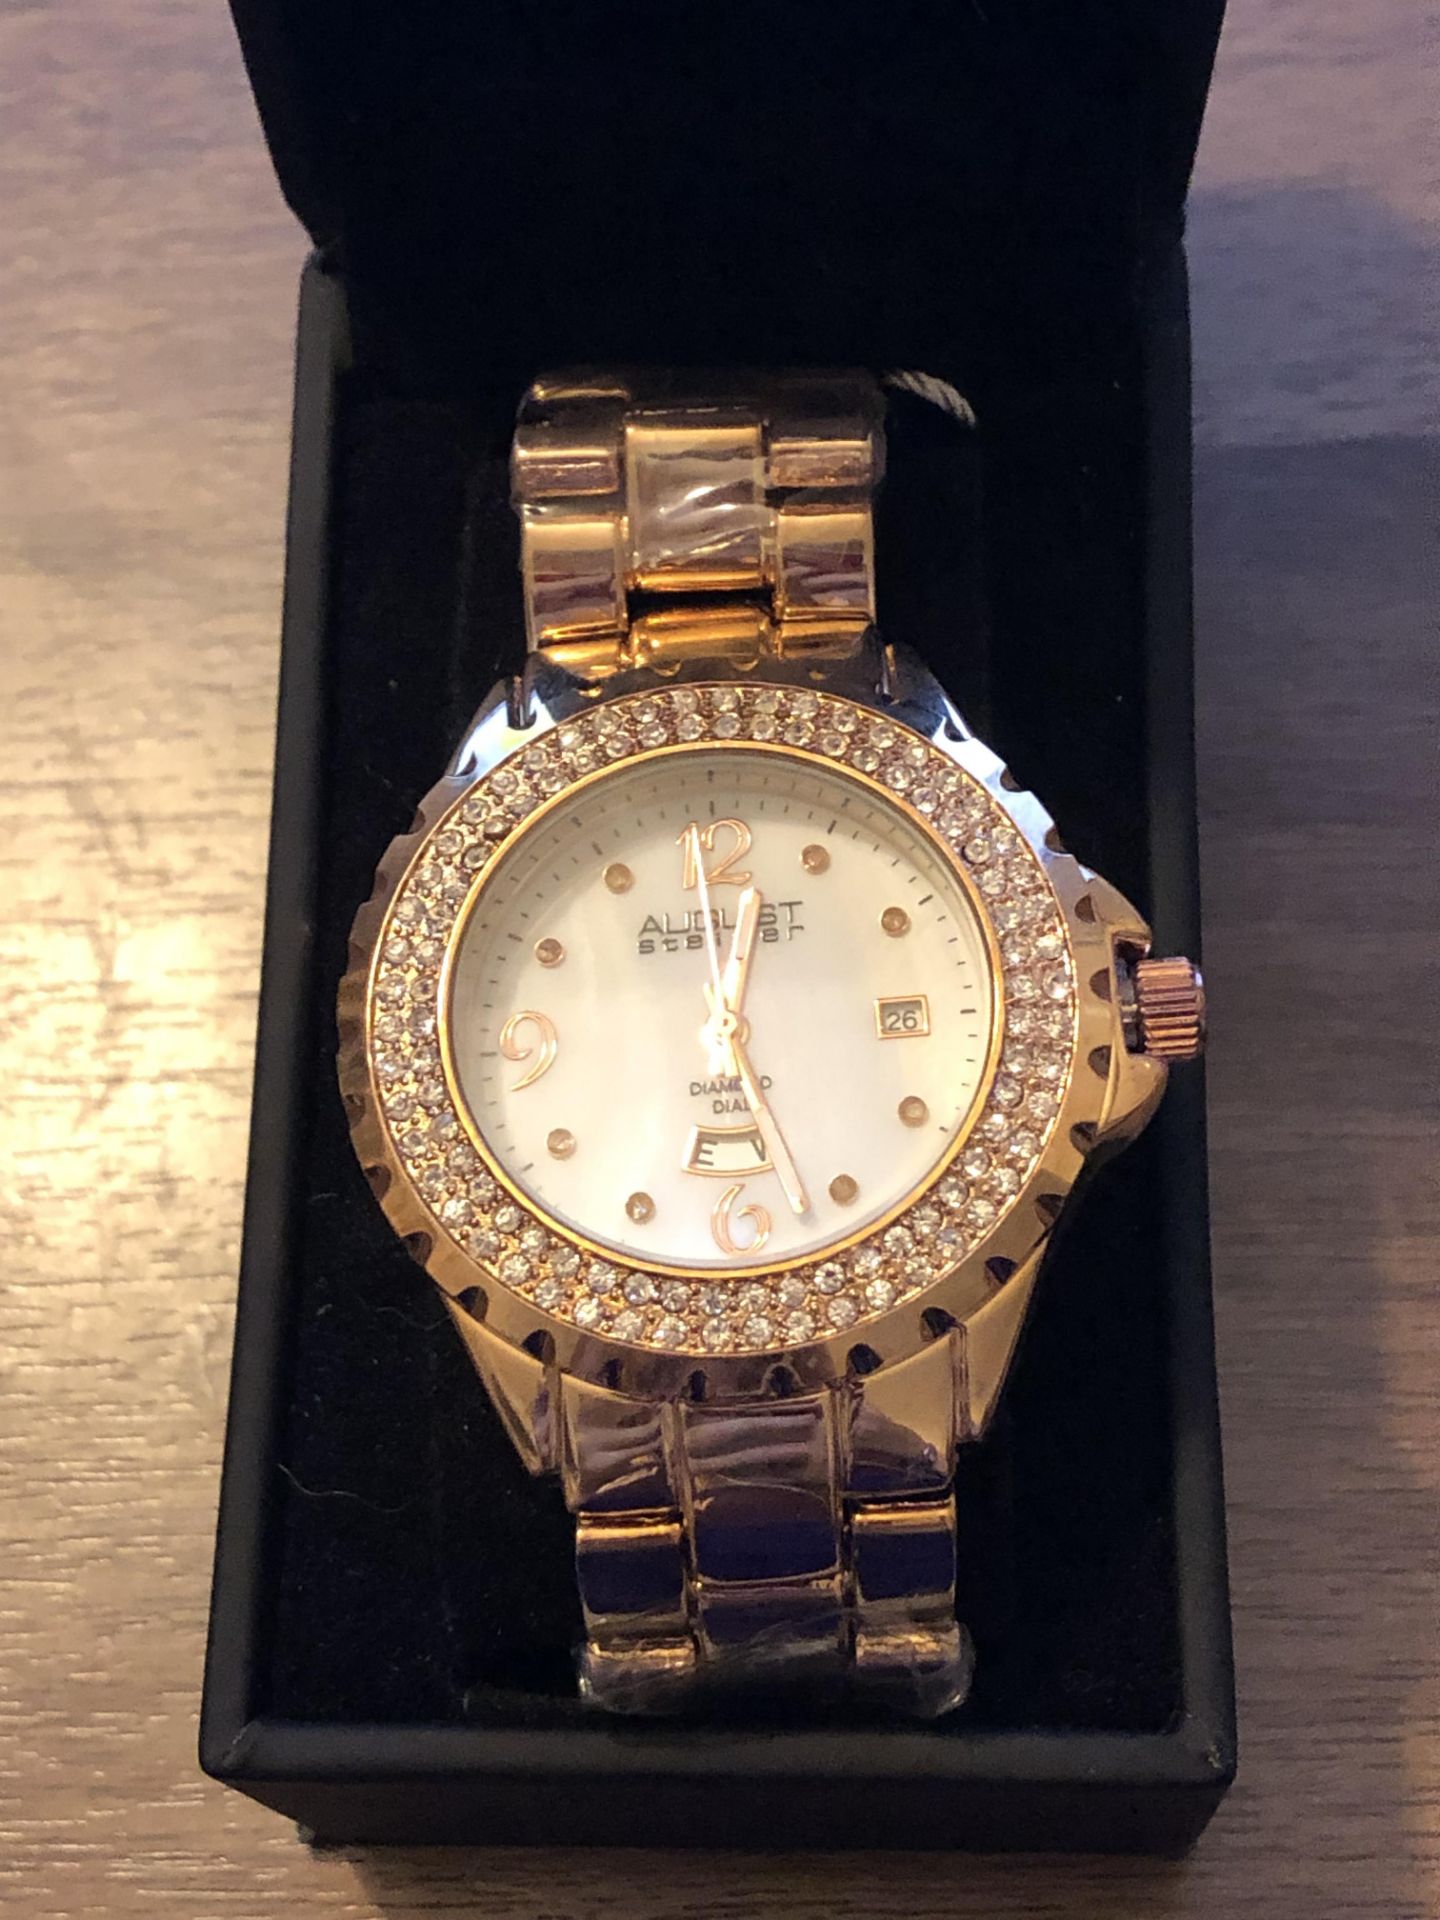 August Steiner Luxury Watch - Image 3 of 8